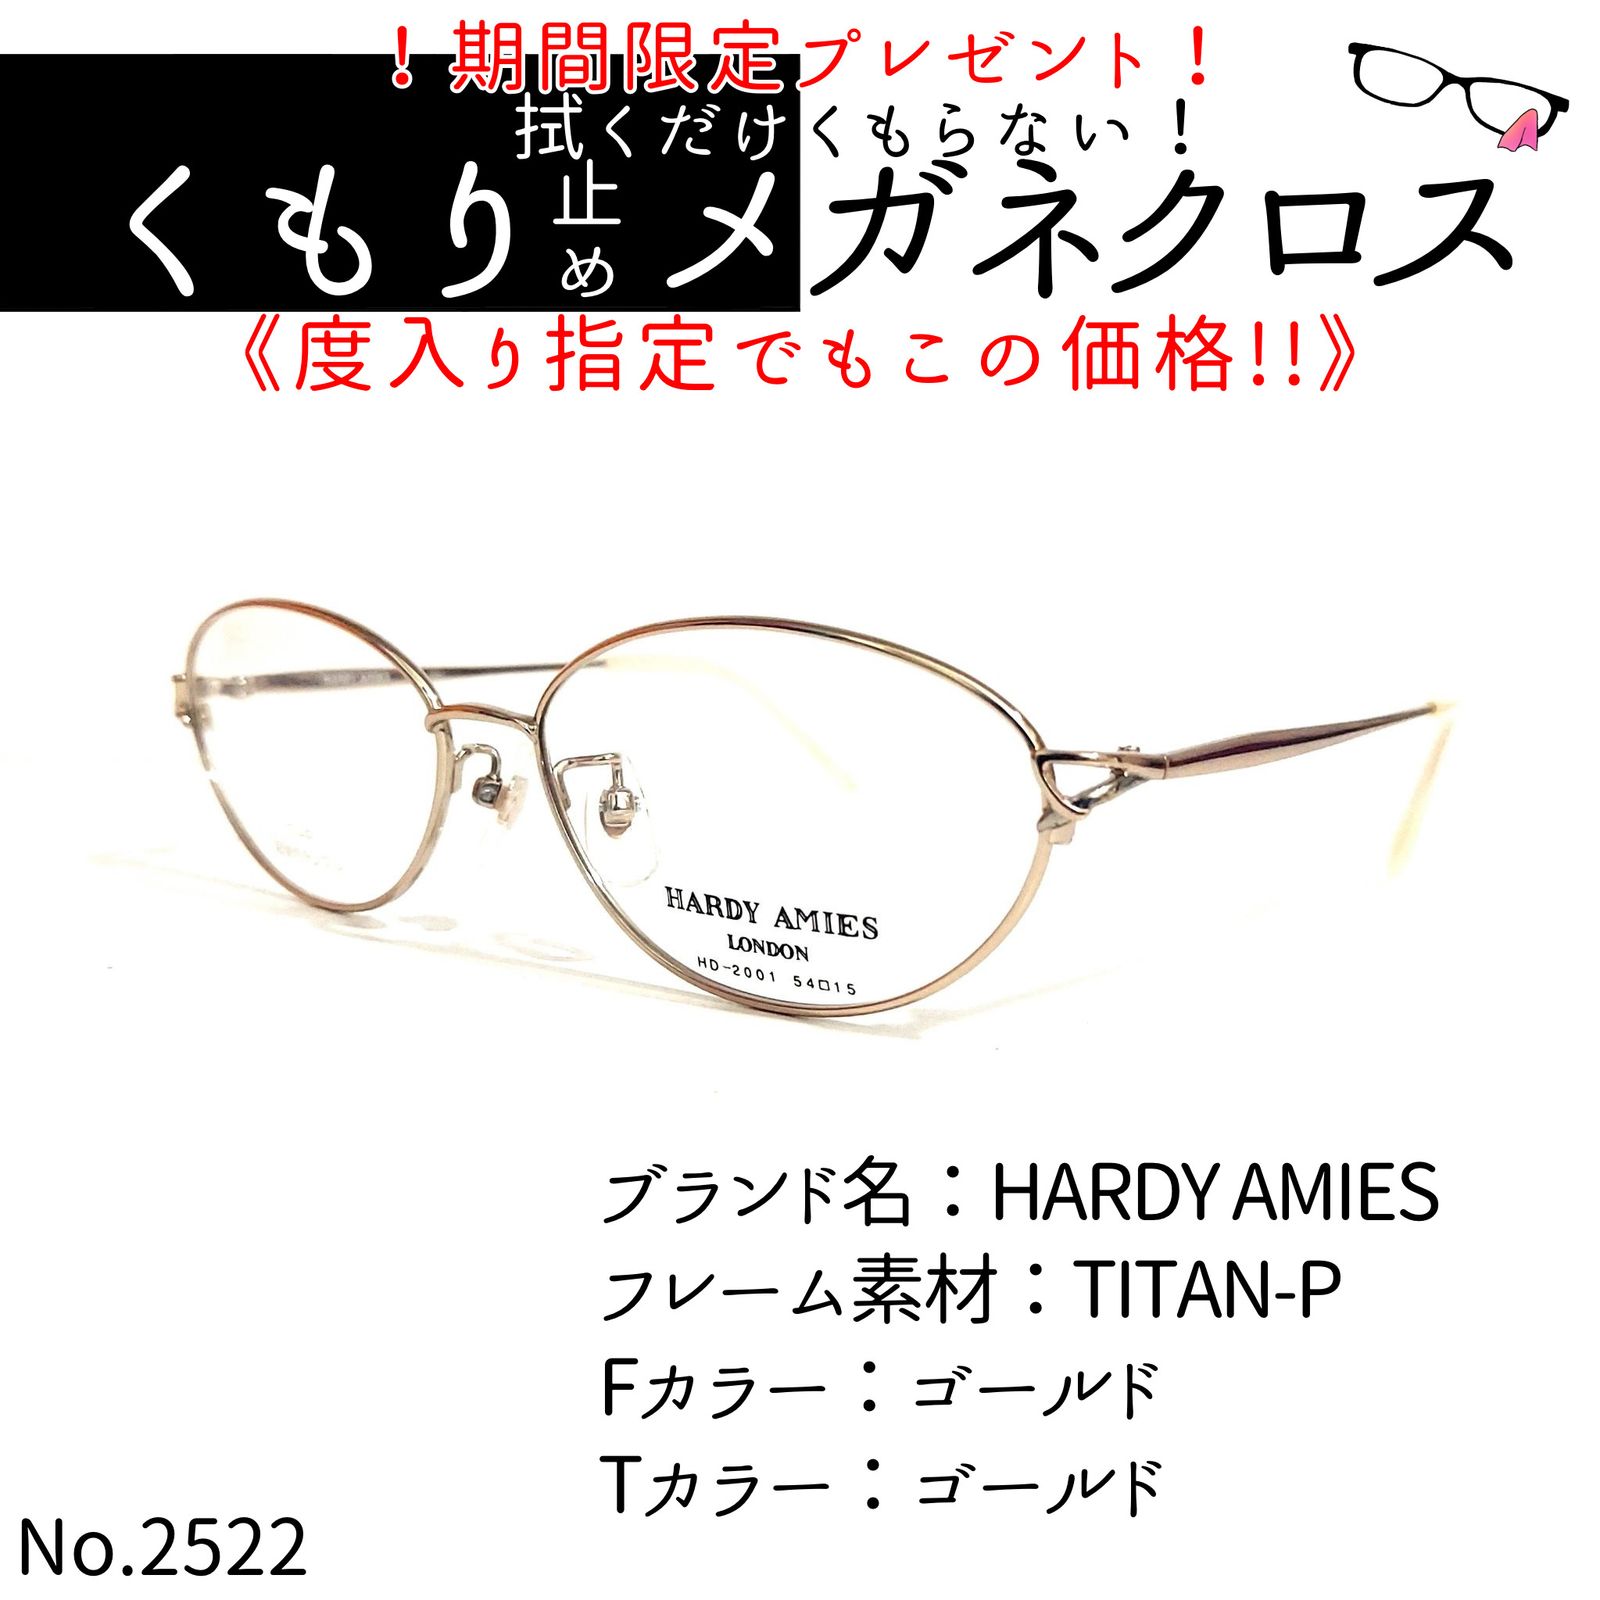 No.2522+メガネ HARDY AMIES【度数入り込み価格】 - メルカリ